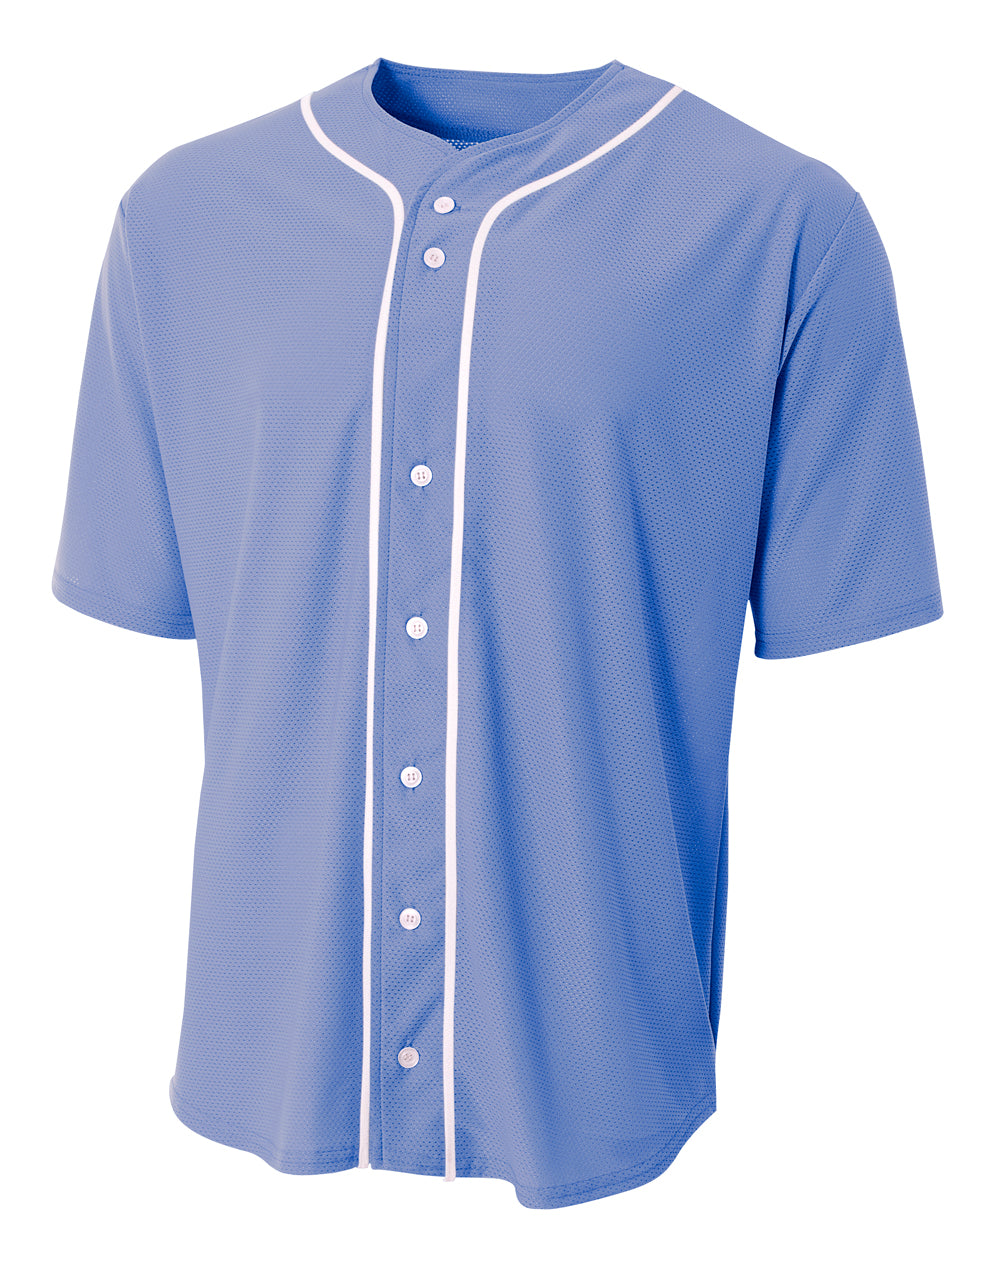 Lt Blue A4 Short Sleeve Full Button Baseball Jersey